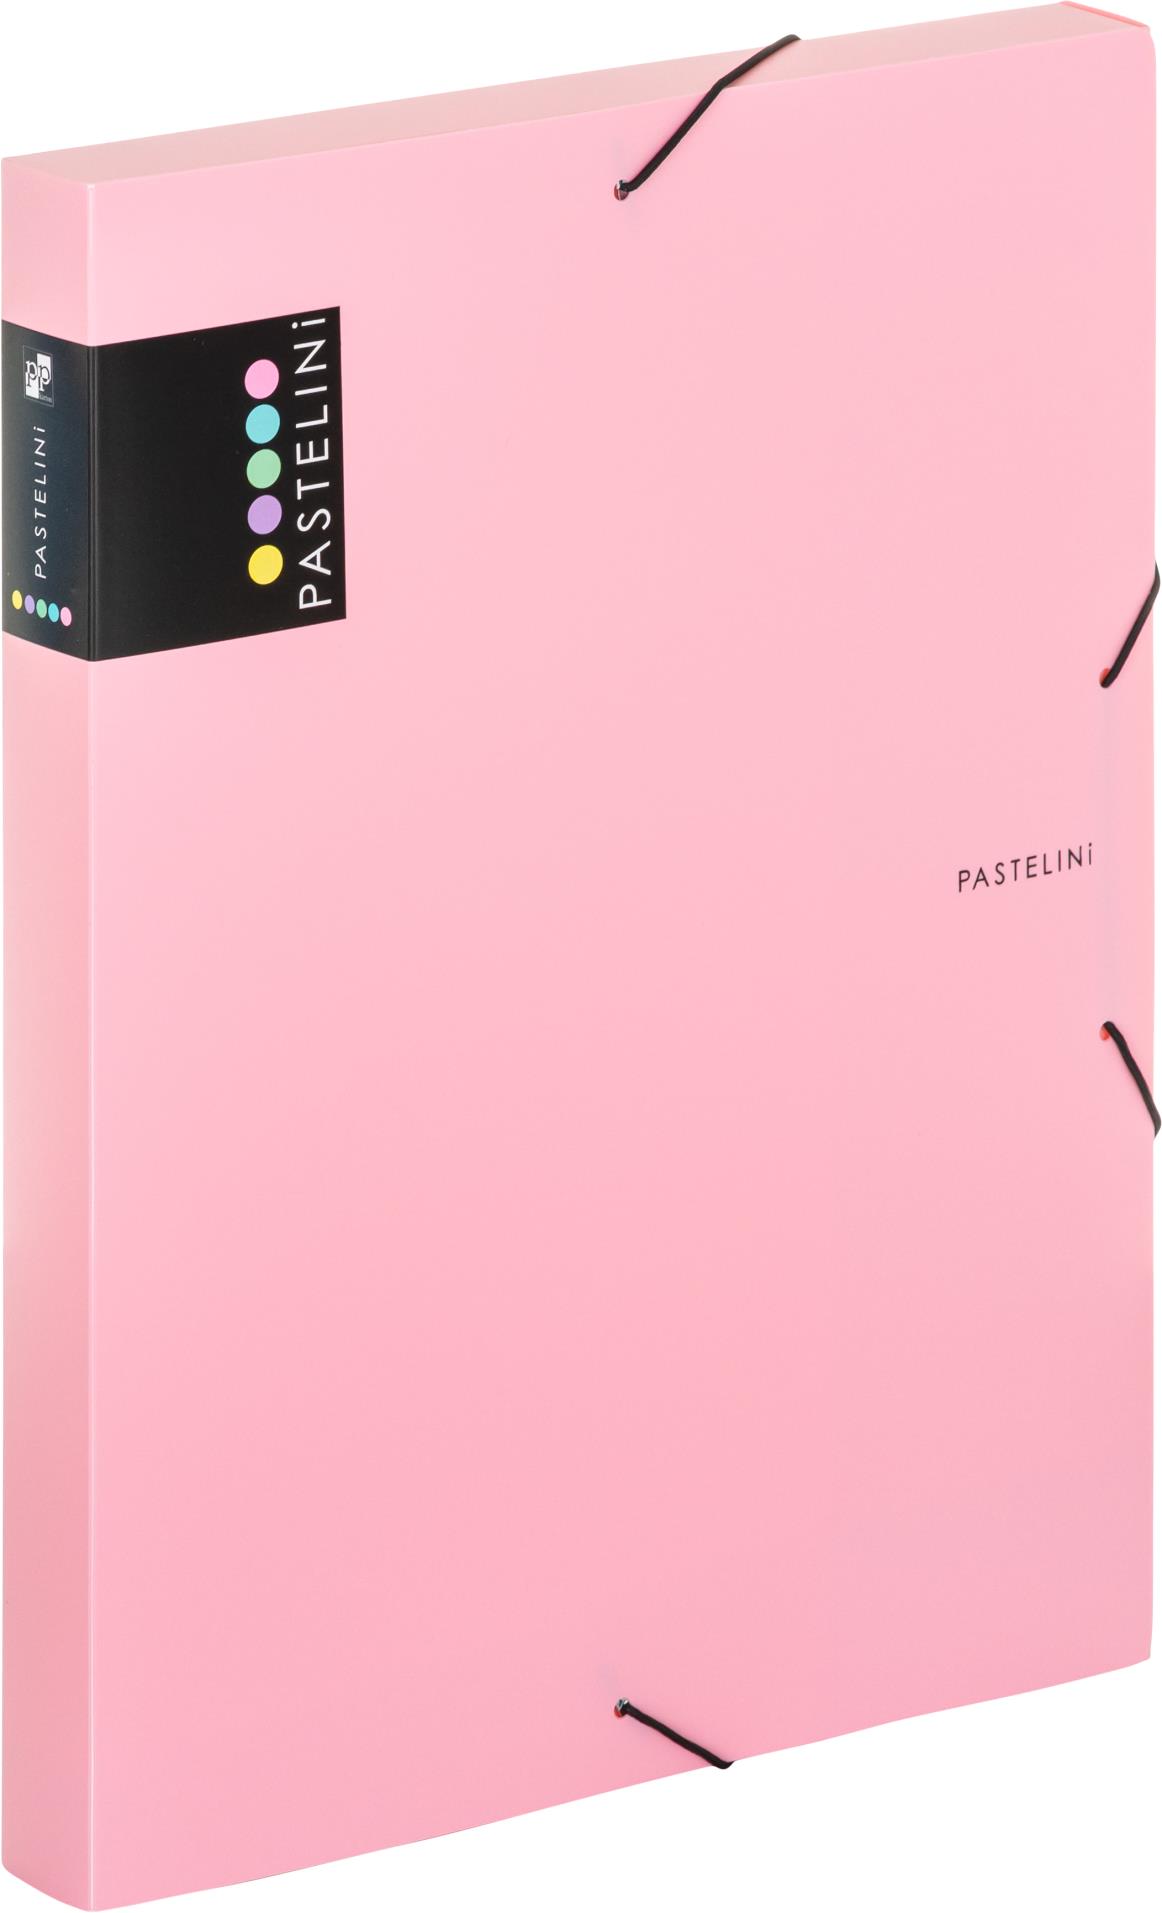 Karton P+P Box na spisy s gumičkou Pastelini - A4, růžový, 3 cm